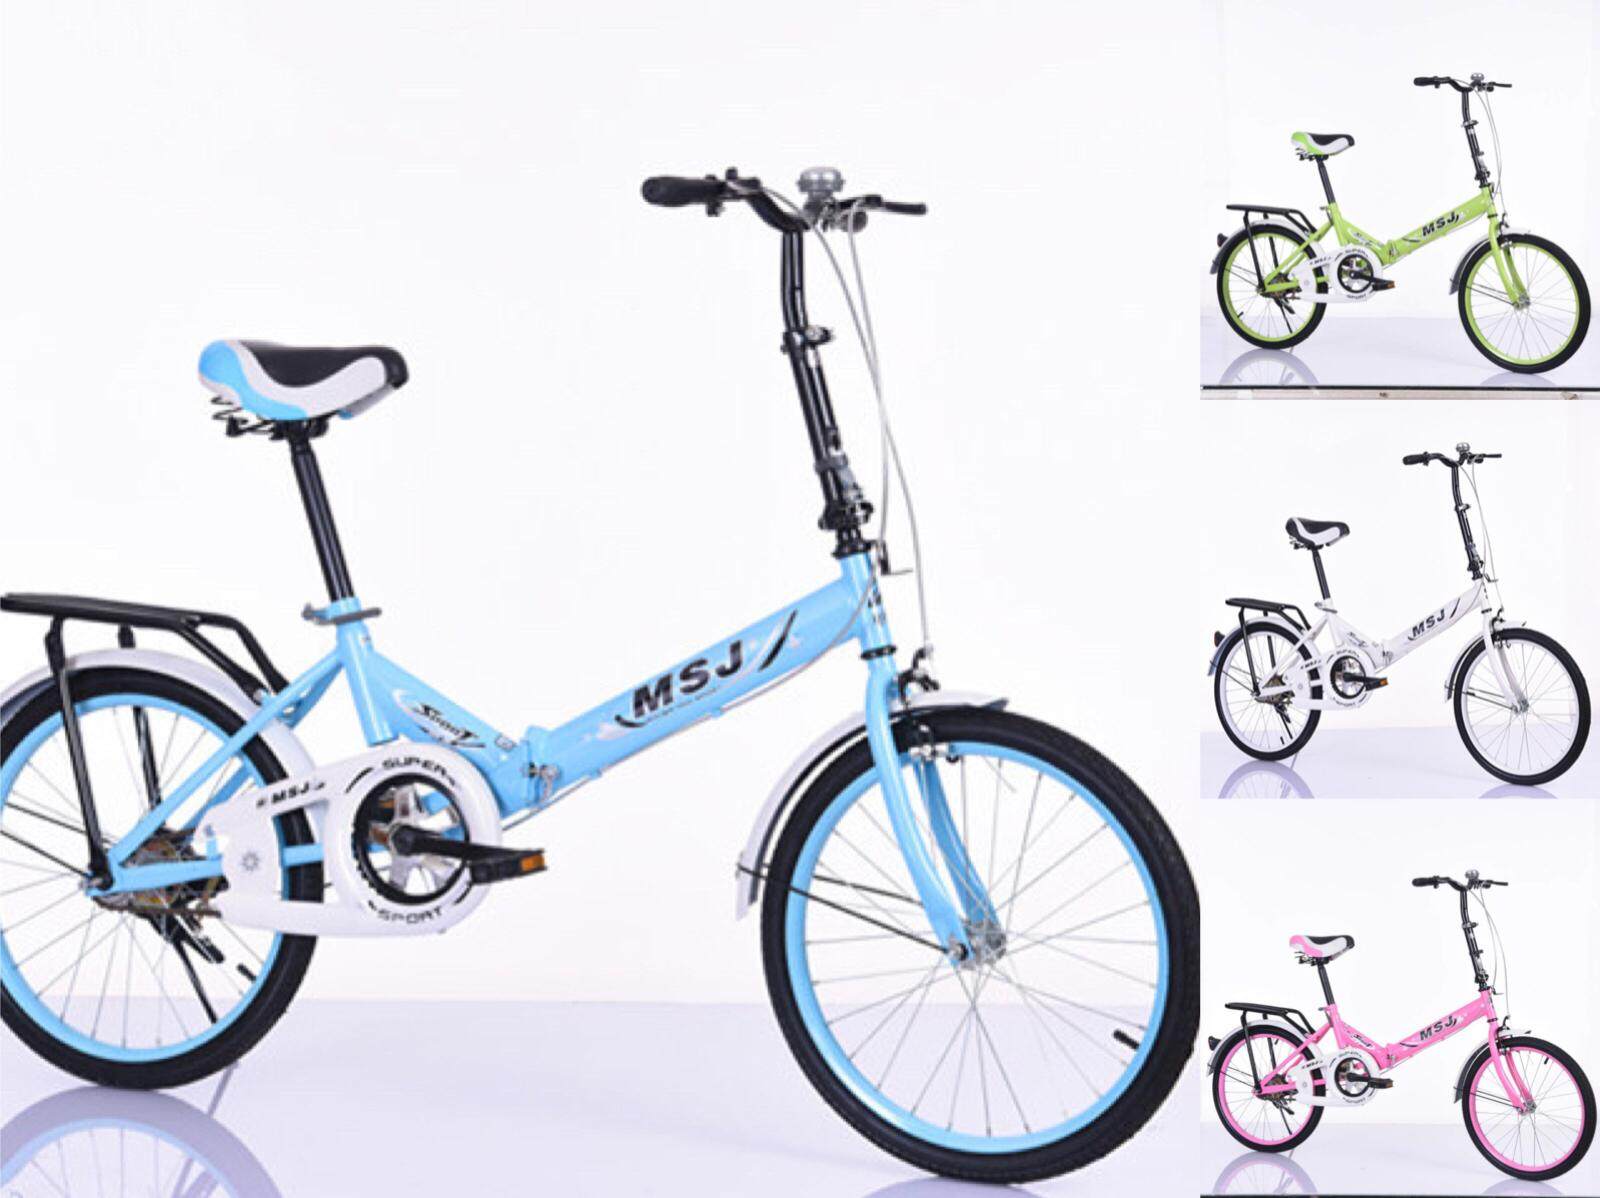 จักรยานพับได้ จักรยานพกพา  20 นิ้ว แถม กระดิ่ง ไม่มีตะกร้า Foldable bicycle（FFB)